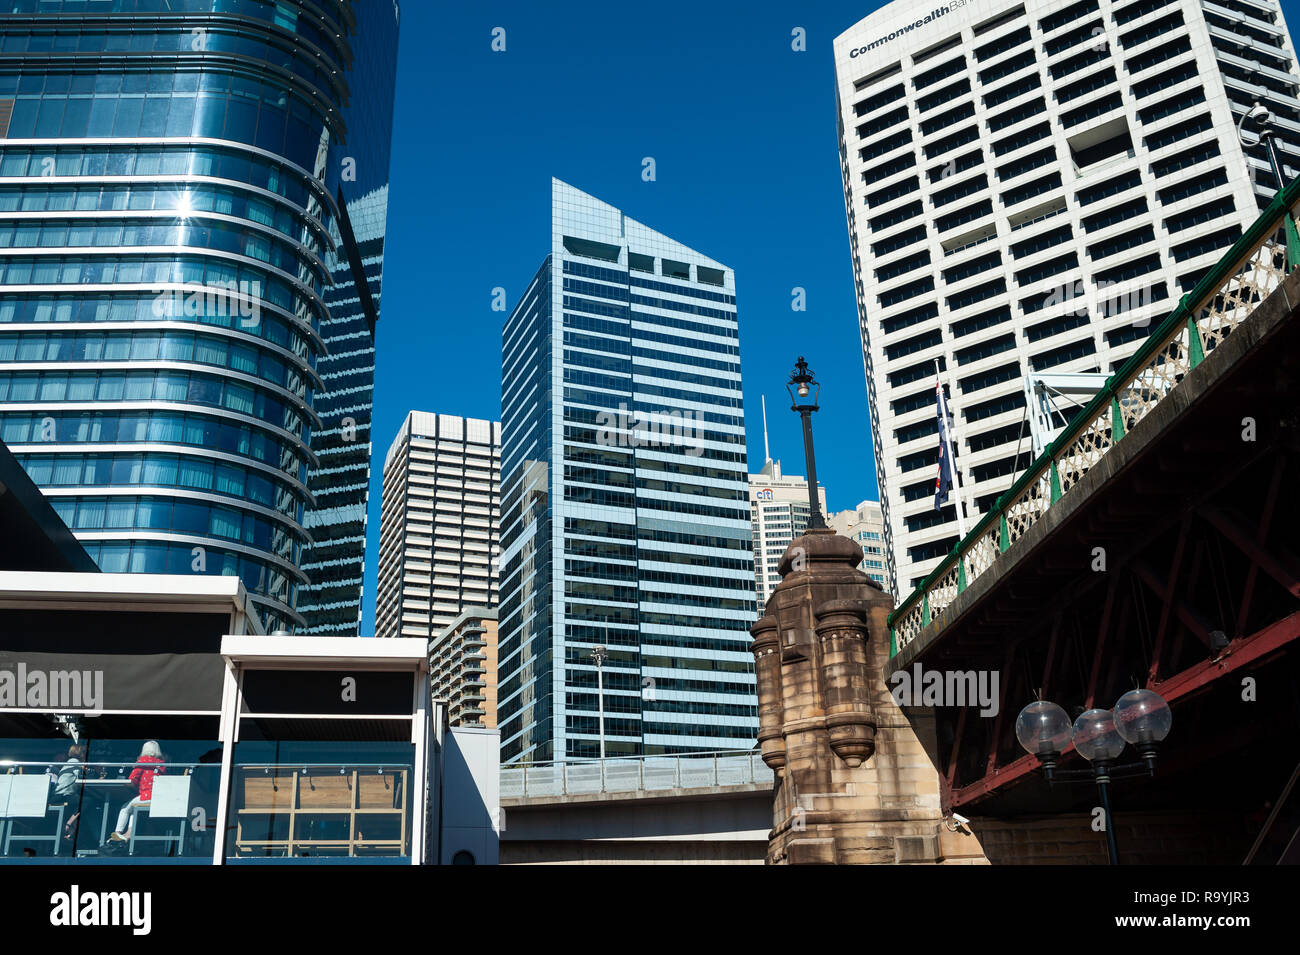 16.09.2018, Sydney, New South Wales, Australien - Ein Blick von der Uferpromenade am Darling Harbour auf die Skyline des Geschaeftsviertels von Sydney Stock Photo